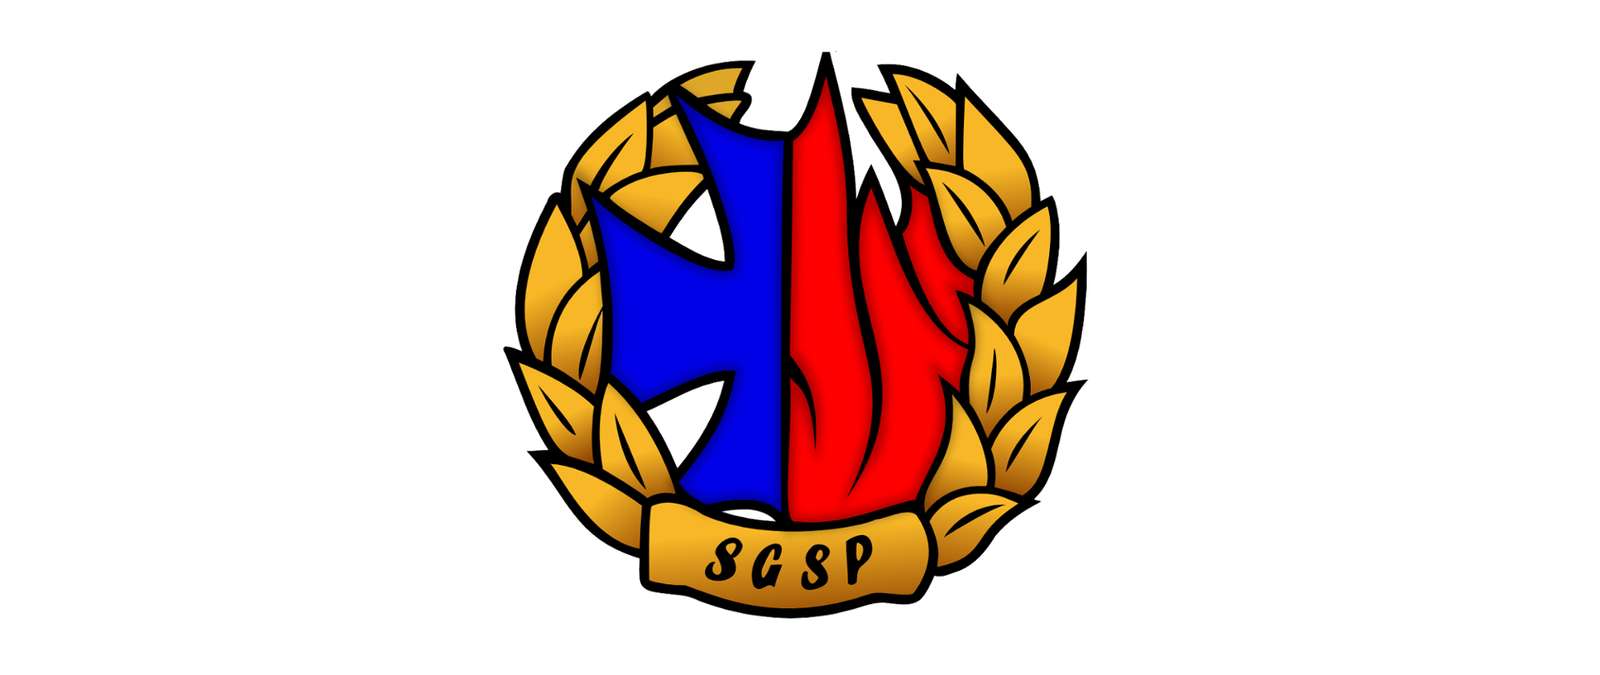 消防署 SGSP のロゴ オンラインパズル